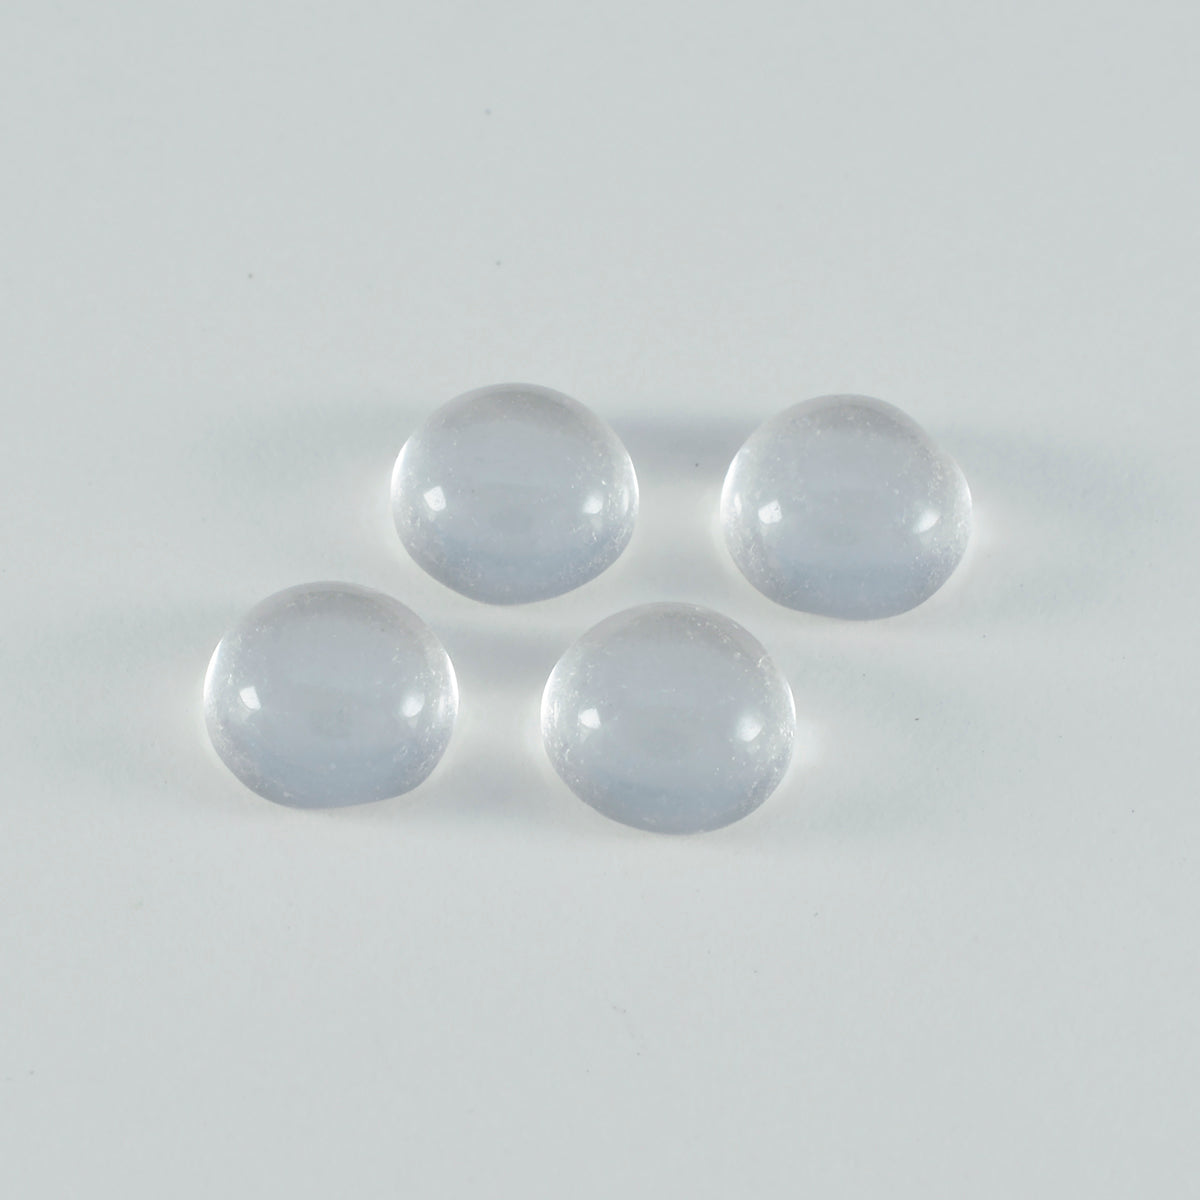 riyogems 1 pezzo di cabochon di quarzo di cristallo bianco 6x6 mm di forma rotonda con pietre preziose sfuse di qualità A+